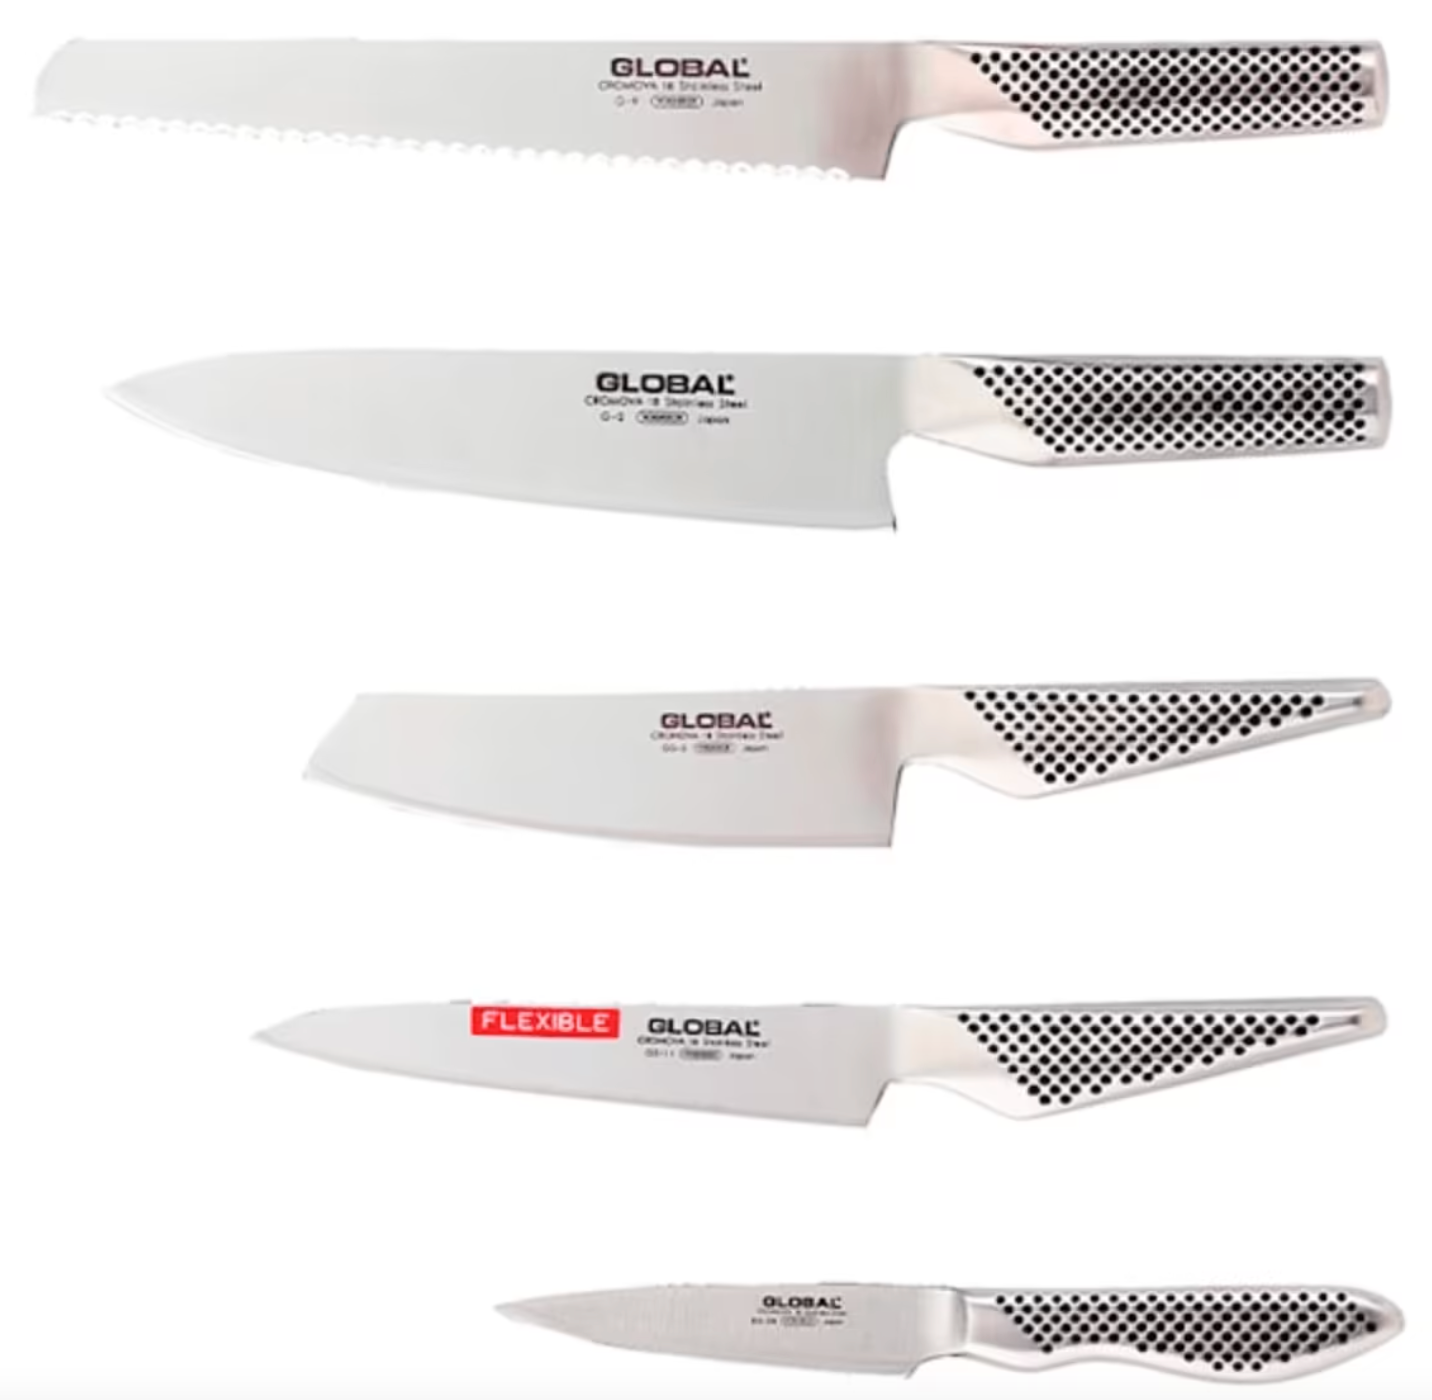 Vassa tips på knivar i hög kvalitet